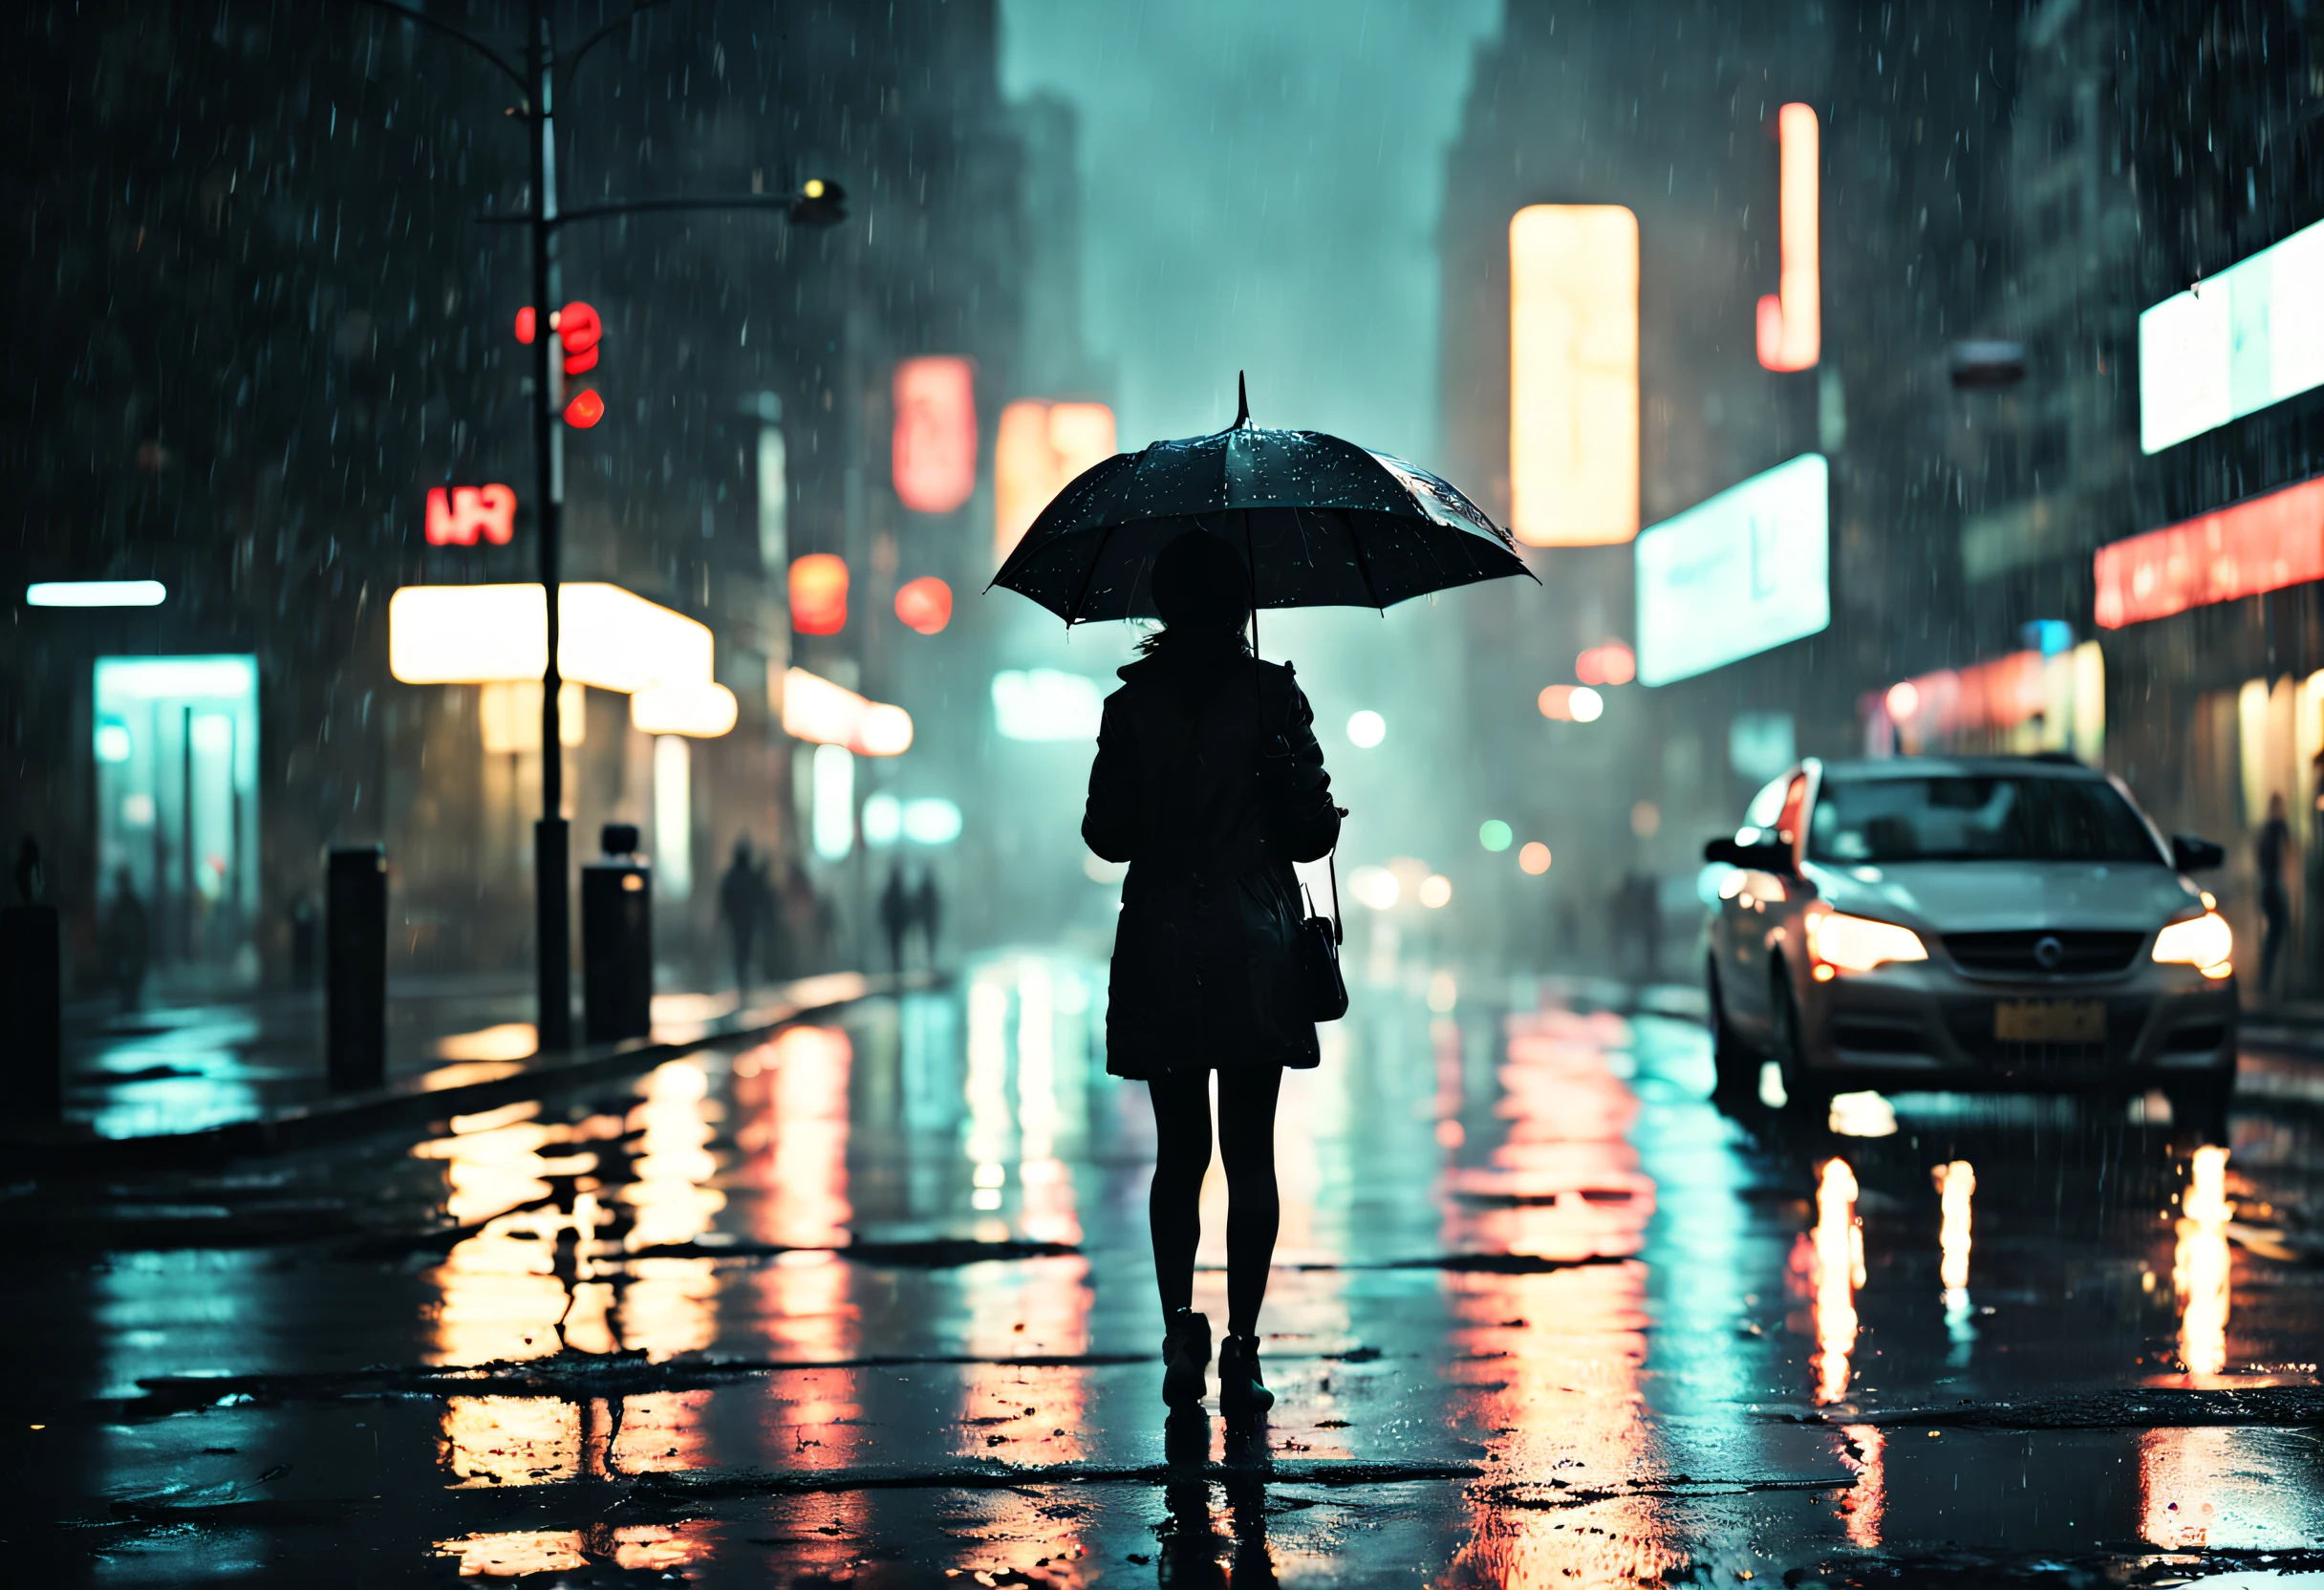 昏暗街道上，一个女孩站在雨水淋漓的伞下,雨滴在湿滑的路面上闪闪发光,路灯散发出的温暖光芒,水坑里倒映的霓虹灯,人们撑着伞匆匆而行, 雨滴打在伞上的声音, 湿树叶散落在地上, 雾蒙蒙的气氛, 路灯映衬下女孩的身影, rainy 城市景观 at night, 电影和情绪化的灯光, 光明与黑暗的强烈对比, 神秘而孤独的感觉, 湿润而有光泽的质地, 冷色调和不饱和色调, 印象派和梦幻派艺术风格. (最好的质量, 4k, 极其详细, 实际的:1.37), 下雨的夜晚, 城市景观, 电影灯光, 湿润质地, 忧郁的气氛, 印象派艺术风格